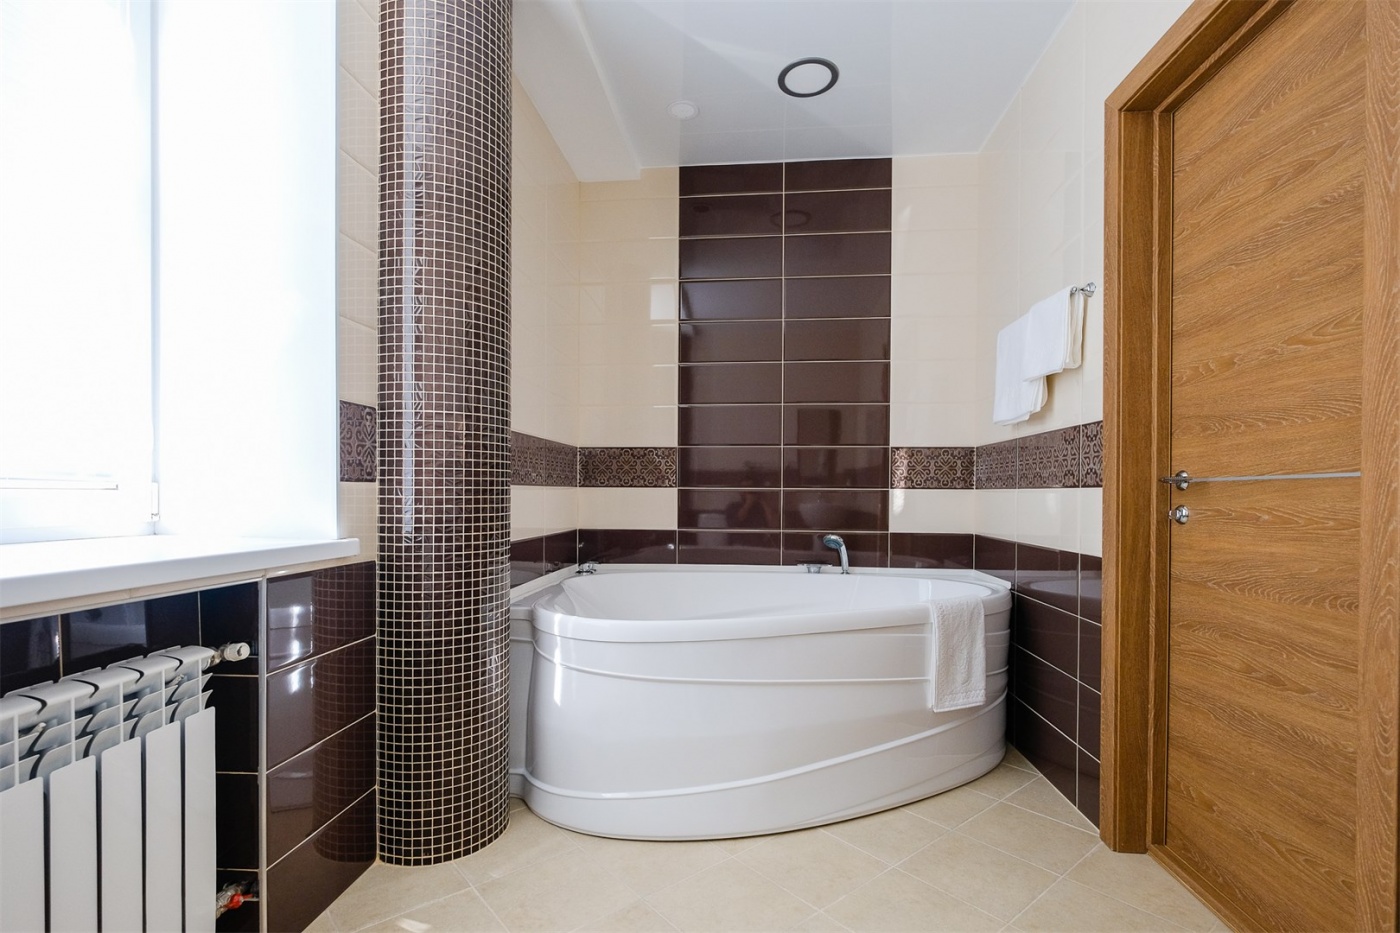  Отель "Галерея" Томская область Люкс с гидромассажной ванной, фото 10